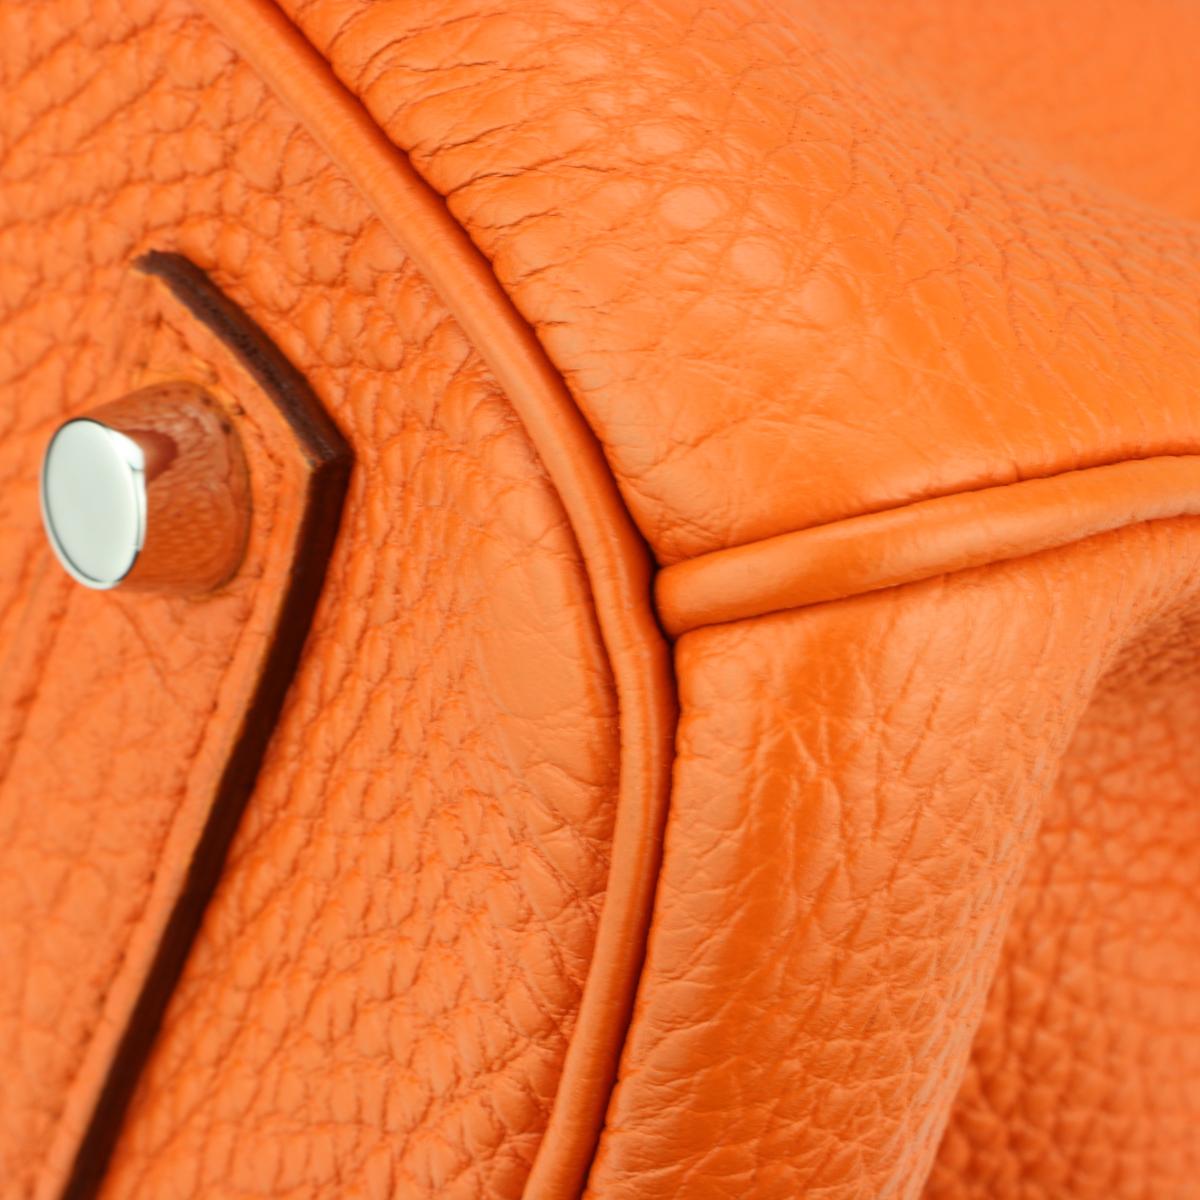 Hermès Birkin Bag 35cm Orange Togo Leather with Palladium Hardware Stamp N 2010 1